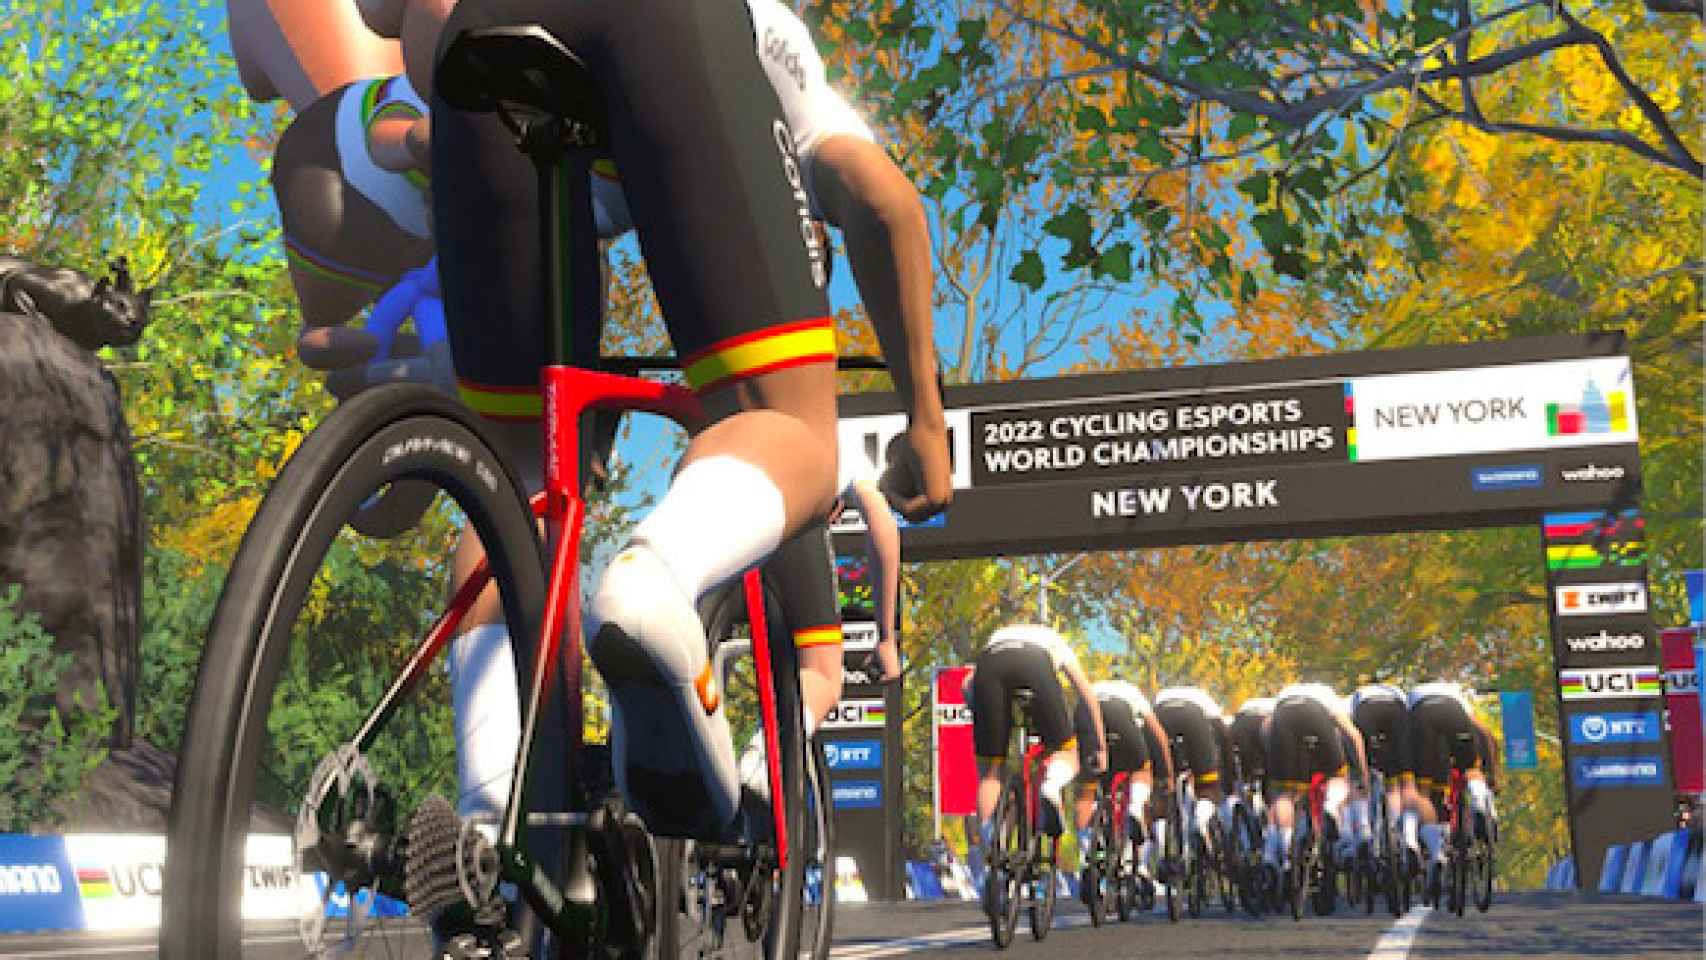 Imagen promocional del Campeonato del mundo de ciclismo en eSports